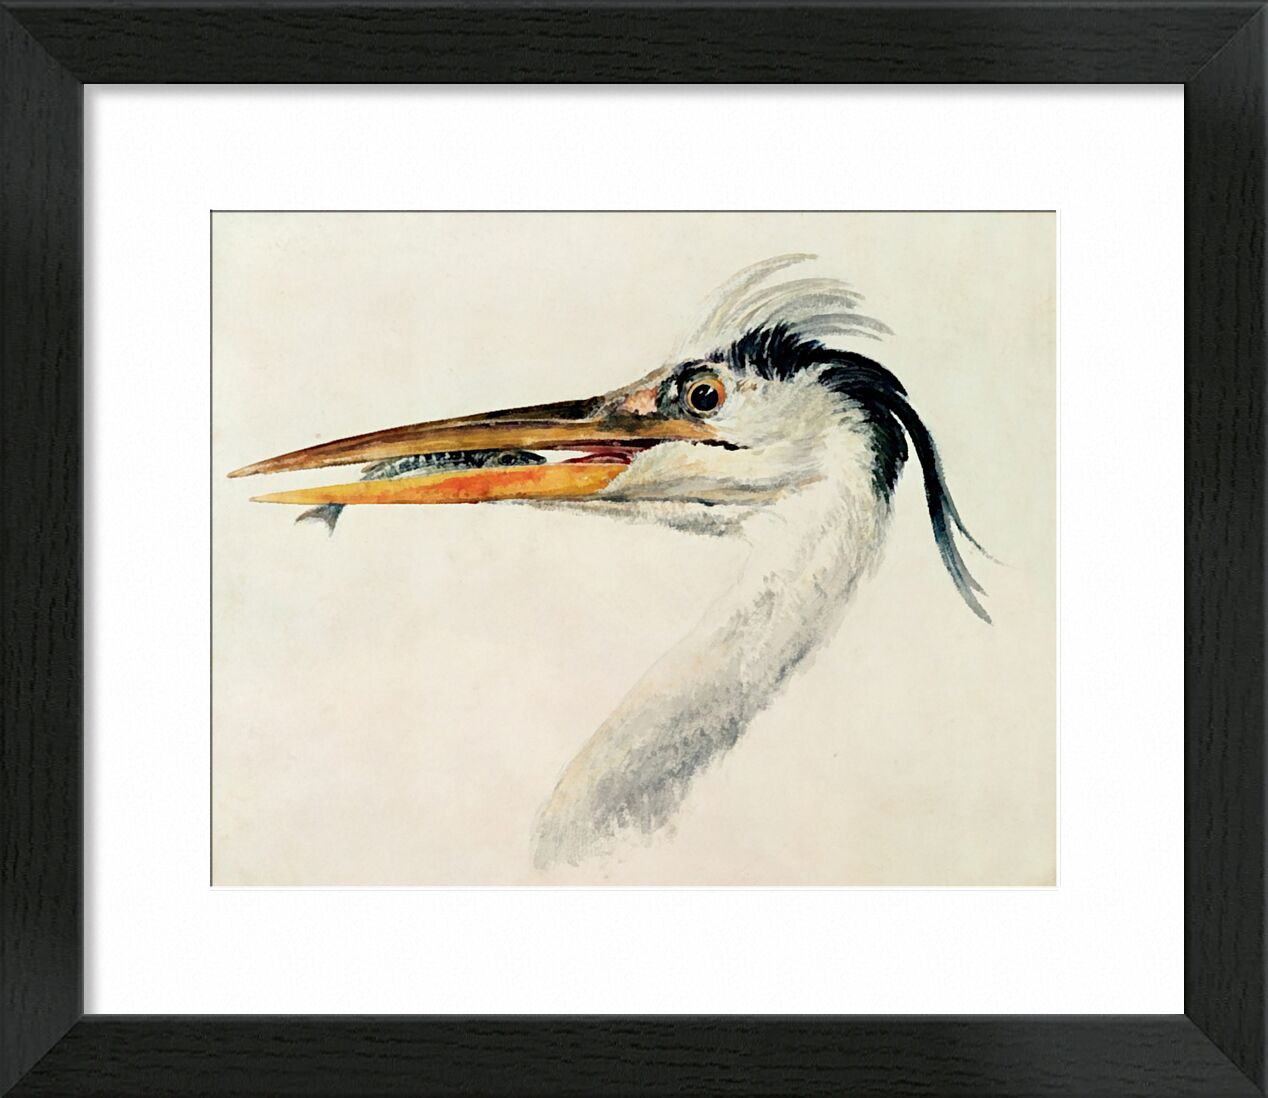 Heron with a Fish - TURNER desde Bellas artes, Prodi Art, TORNERO, garza, pescado, pintura